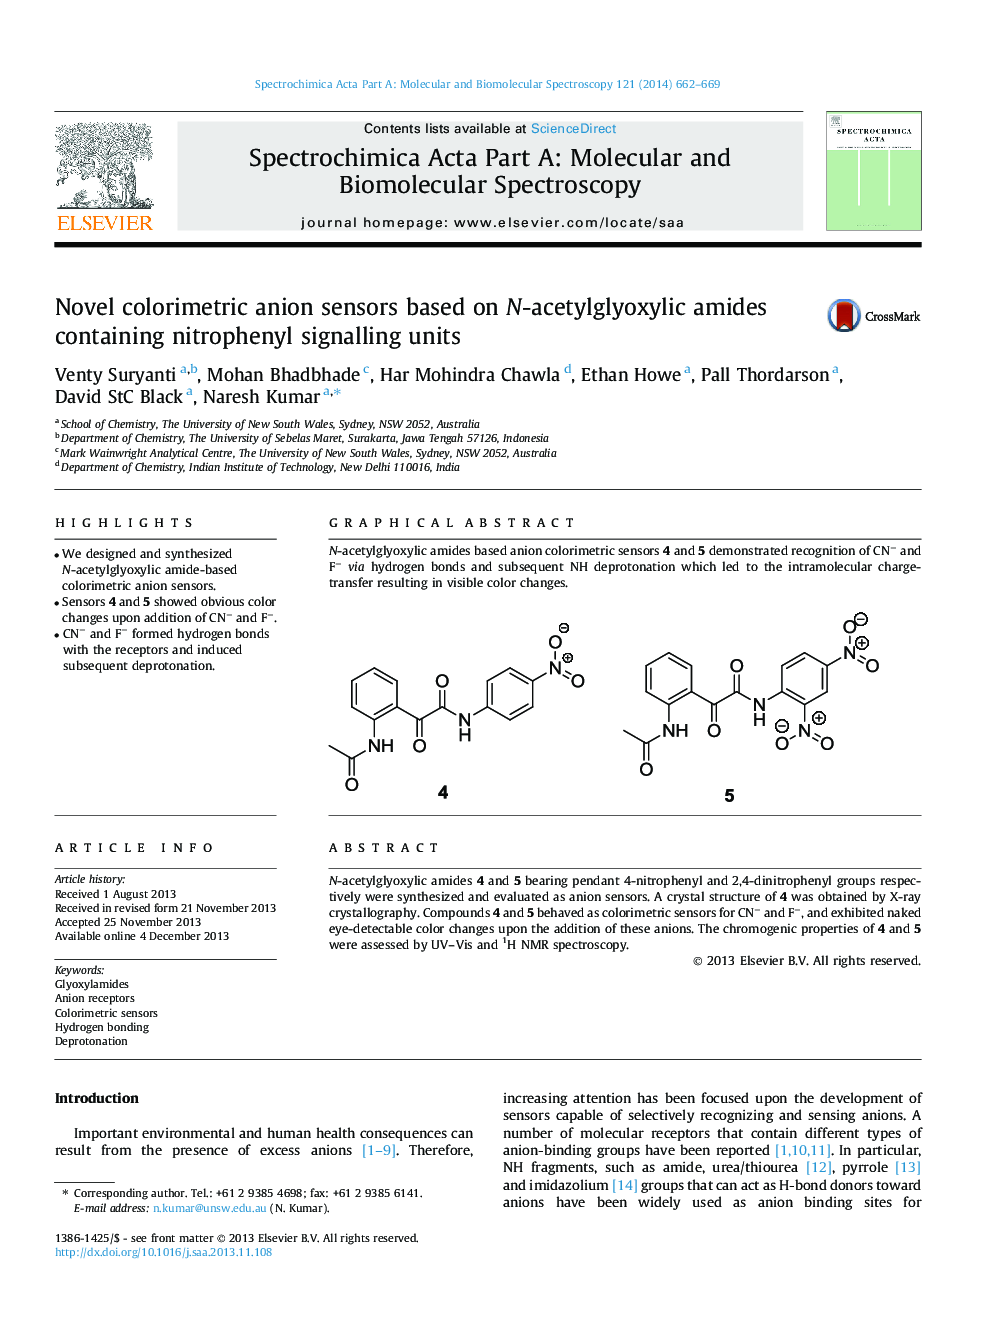 Novel colorimetric anion sensors based on N-acetylglyoxylic amides containing nitrophenyl signalling units